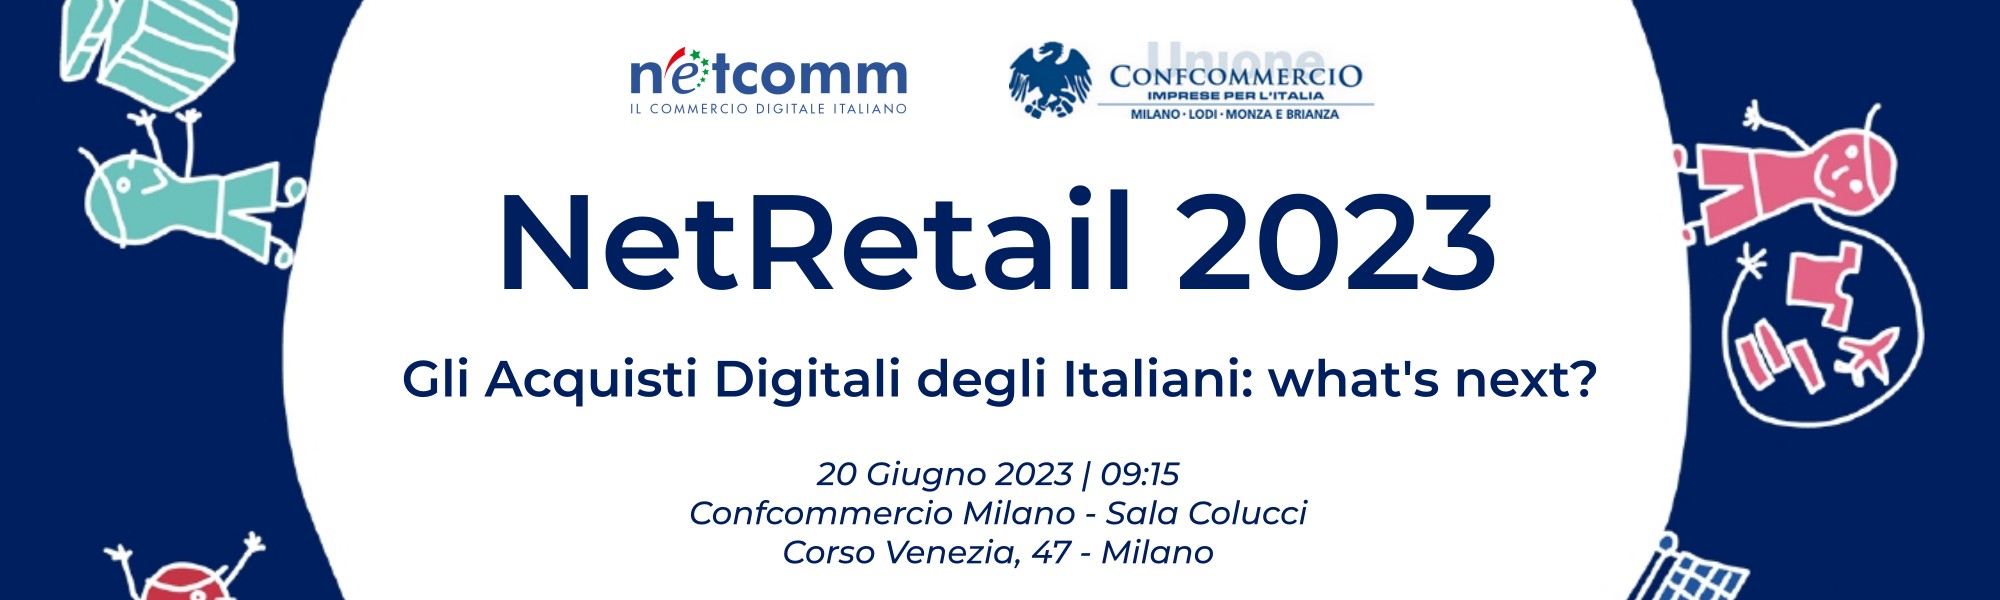 Netcomm NetRetail 2023 - Gli Acquisti Digitali degli Italiani: what's next?